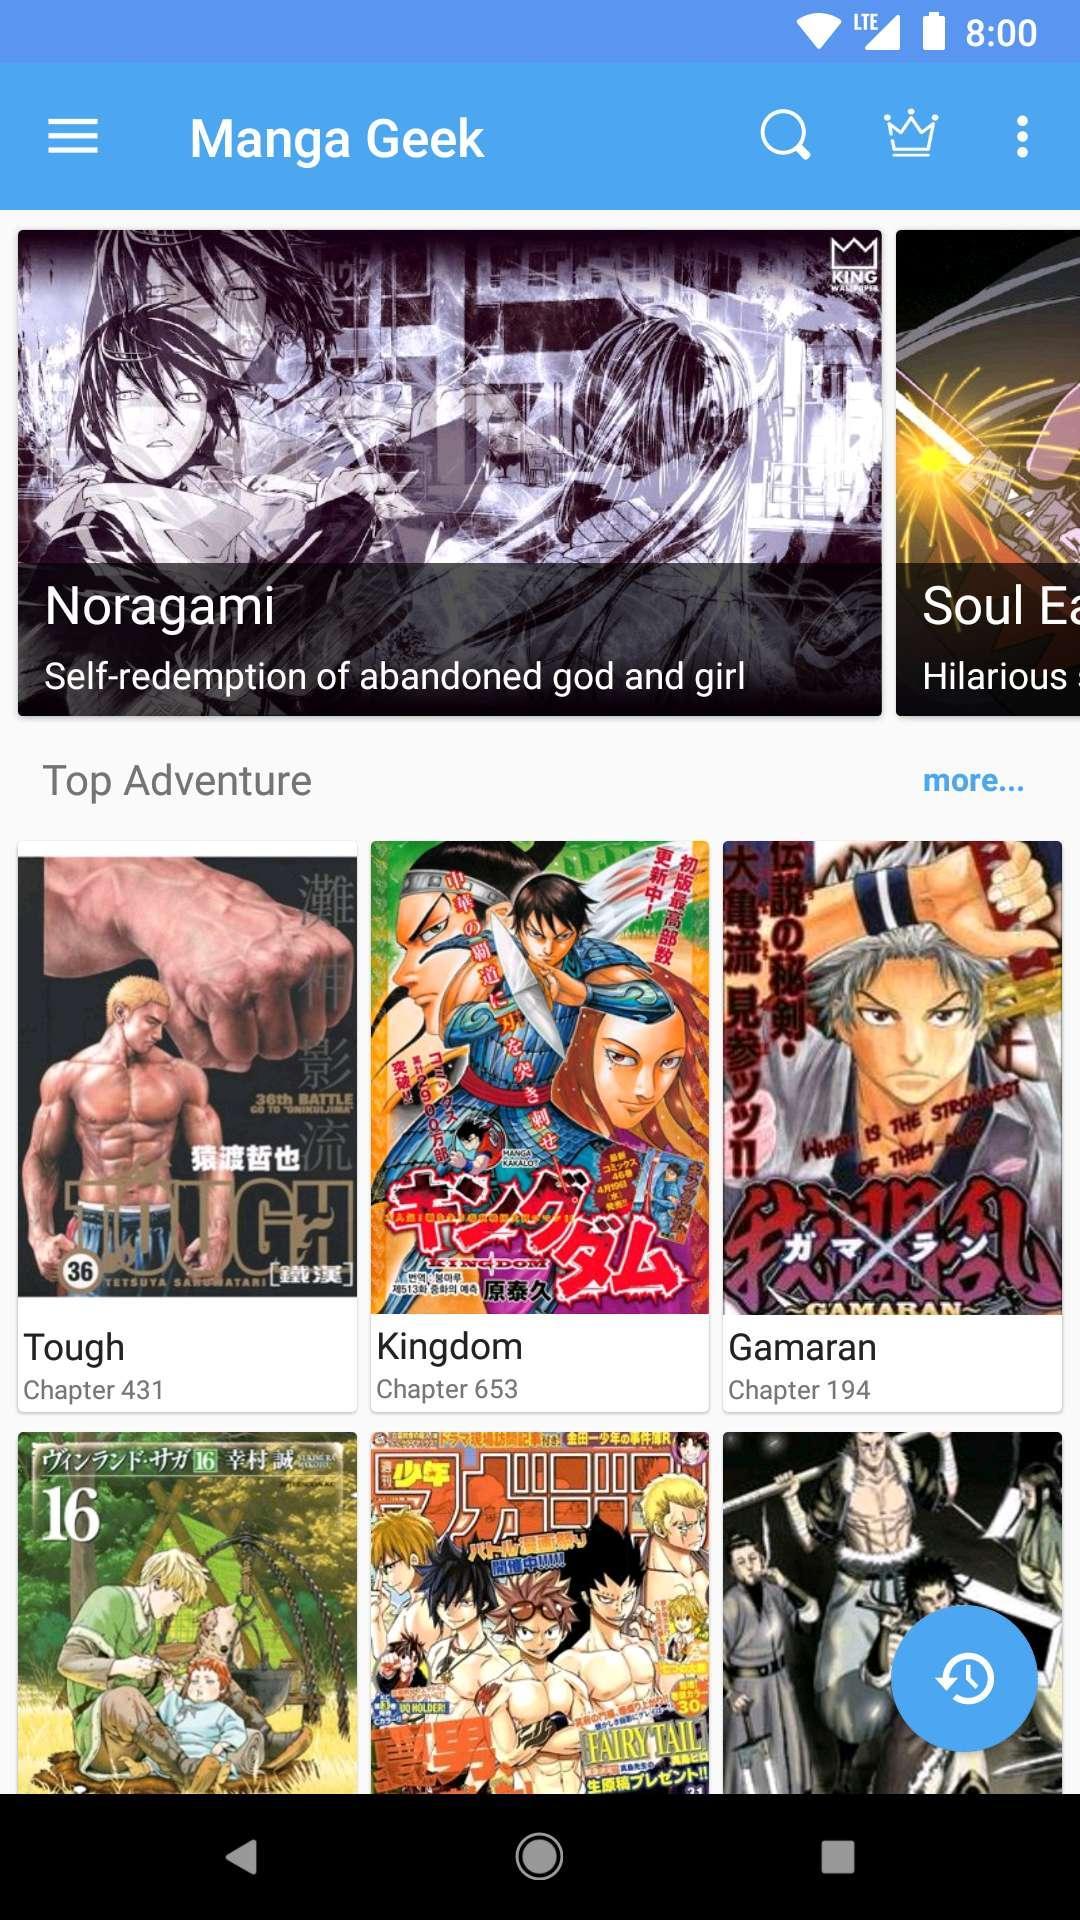 Manga Geek Free Manga Reader App 1.2.1.0 Screenshot 1